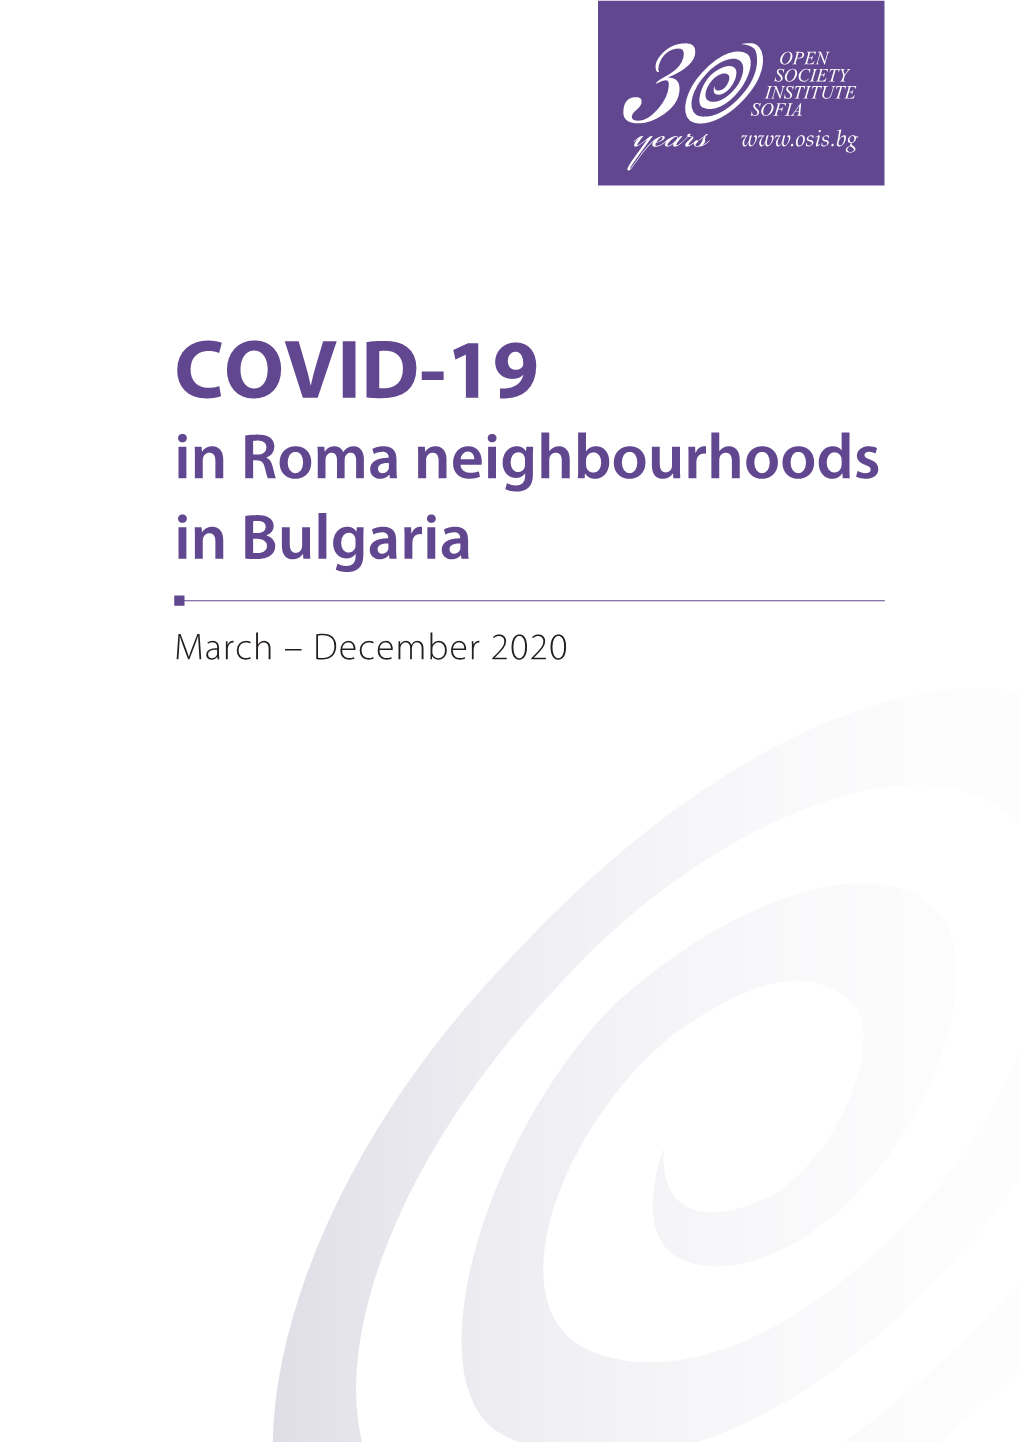 COVID-19 in Roma Neighbourhoods in Bulgaria